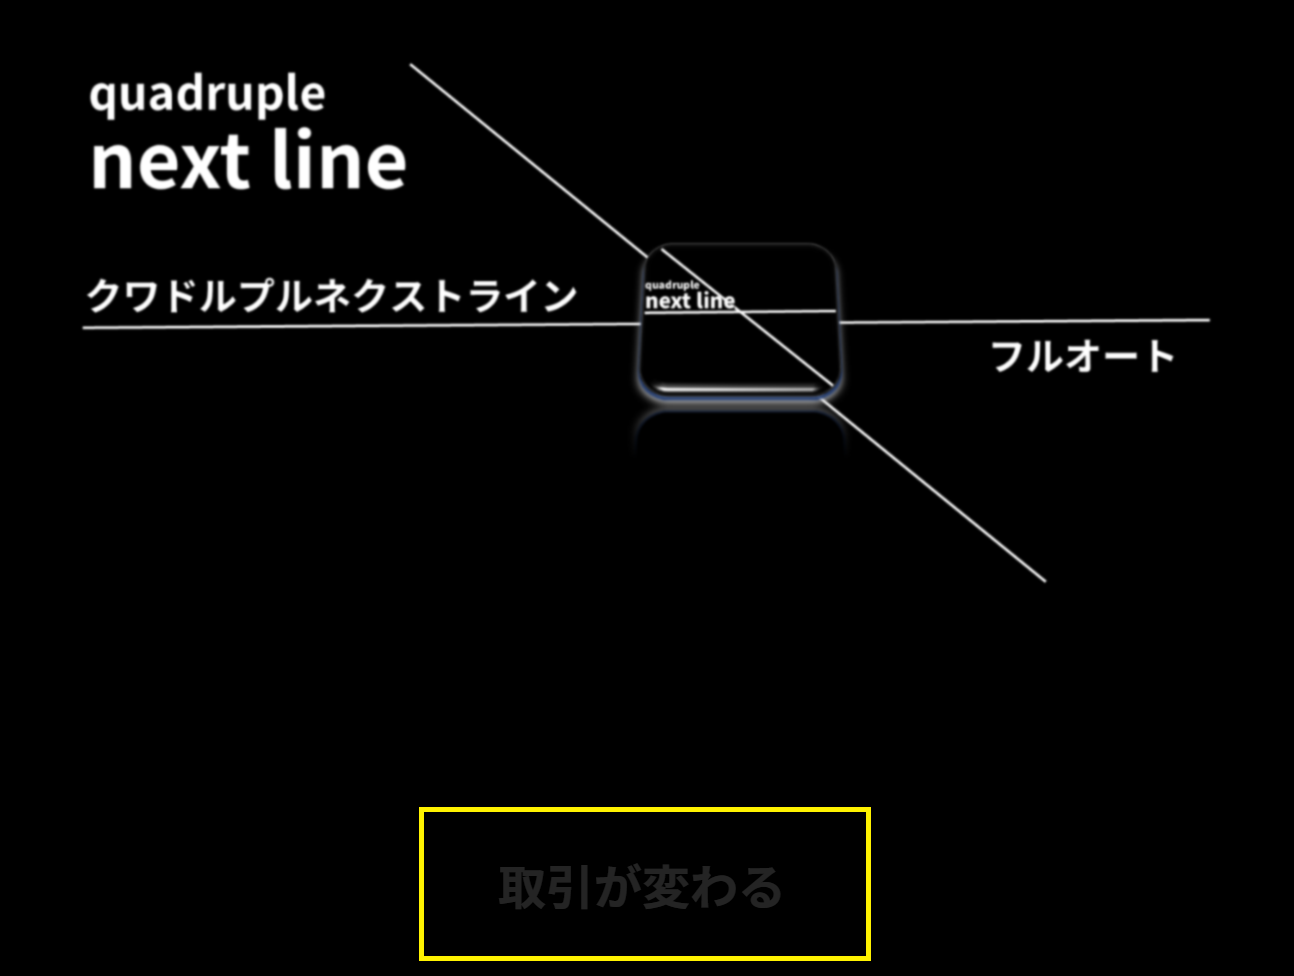 quadruple next line